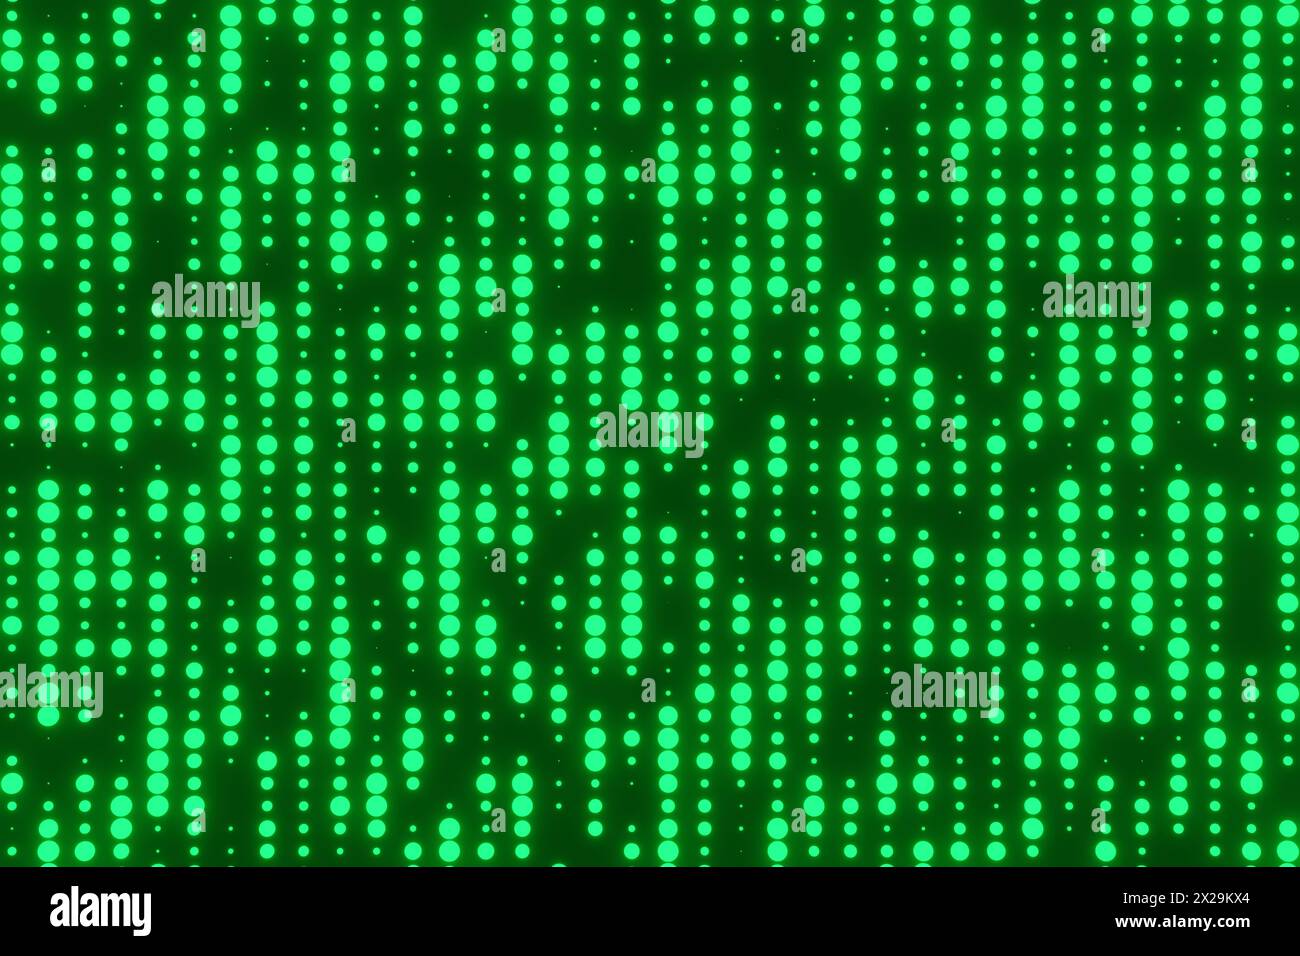 Leuchtende grüne Punkte, die einen Retro-CRT-Bildschirm bilden. Hintergrund und Hintergrundbild zu den Themen Technik, Informatik und Elektronik Stockfoto